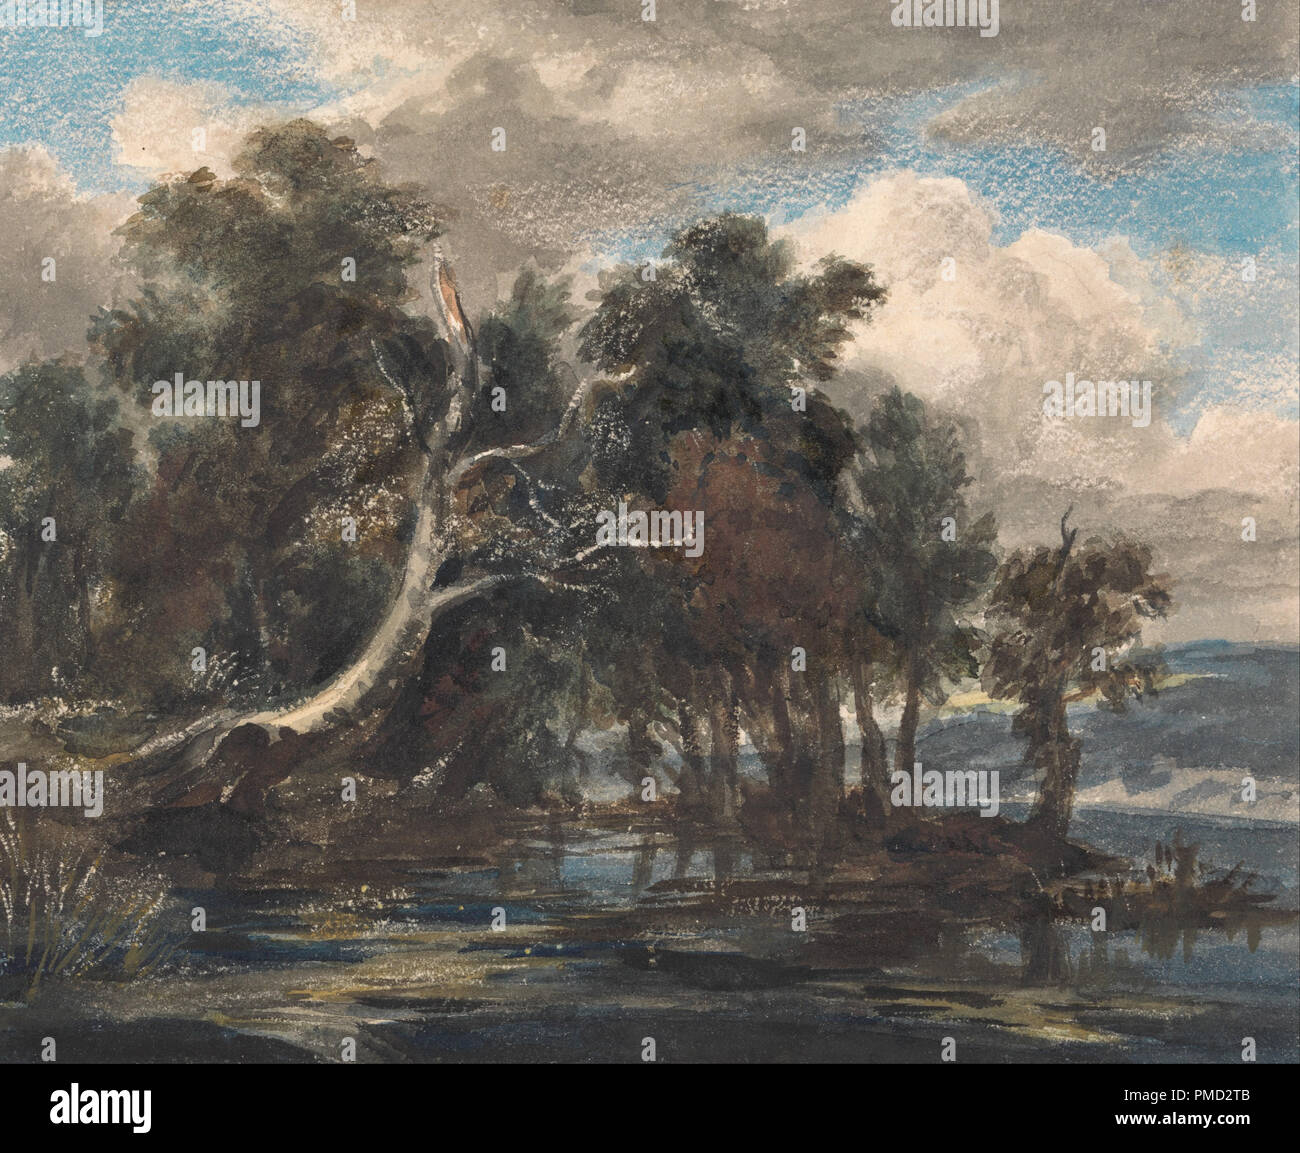 Les arbres en une rivière, ciel nuageux. La peinture. L'aquarelle. Hauteur : 171 mm (6,73 in) ; Largeur : 213 mm (8,38 in). Auteur : Inconnu. Banque D'Images